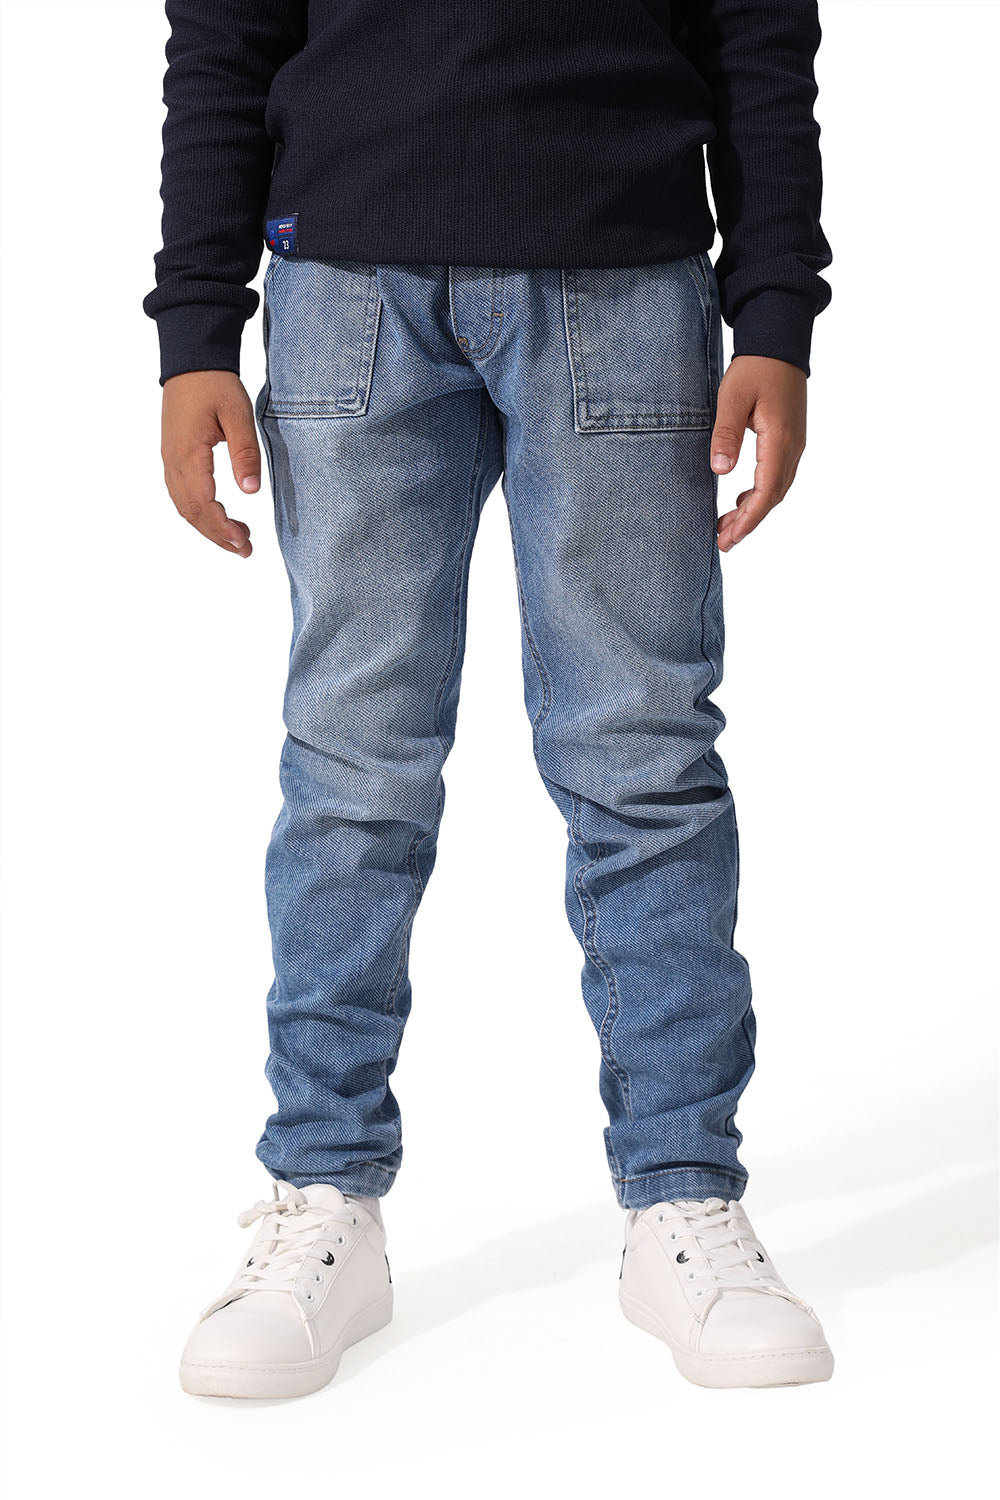 Jeans Pants Jogger